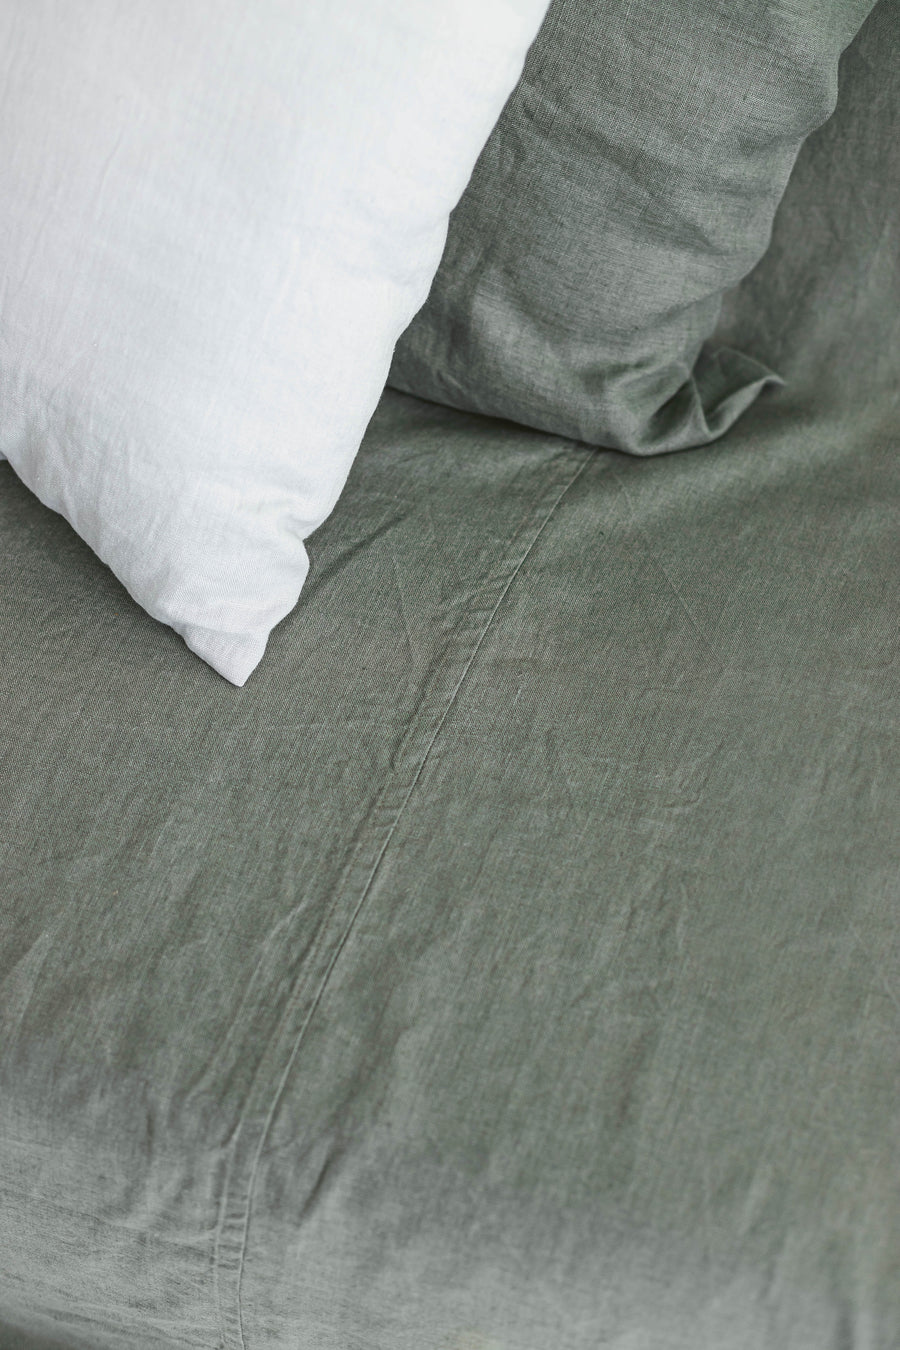 Green linen sofa cover.